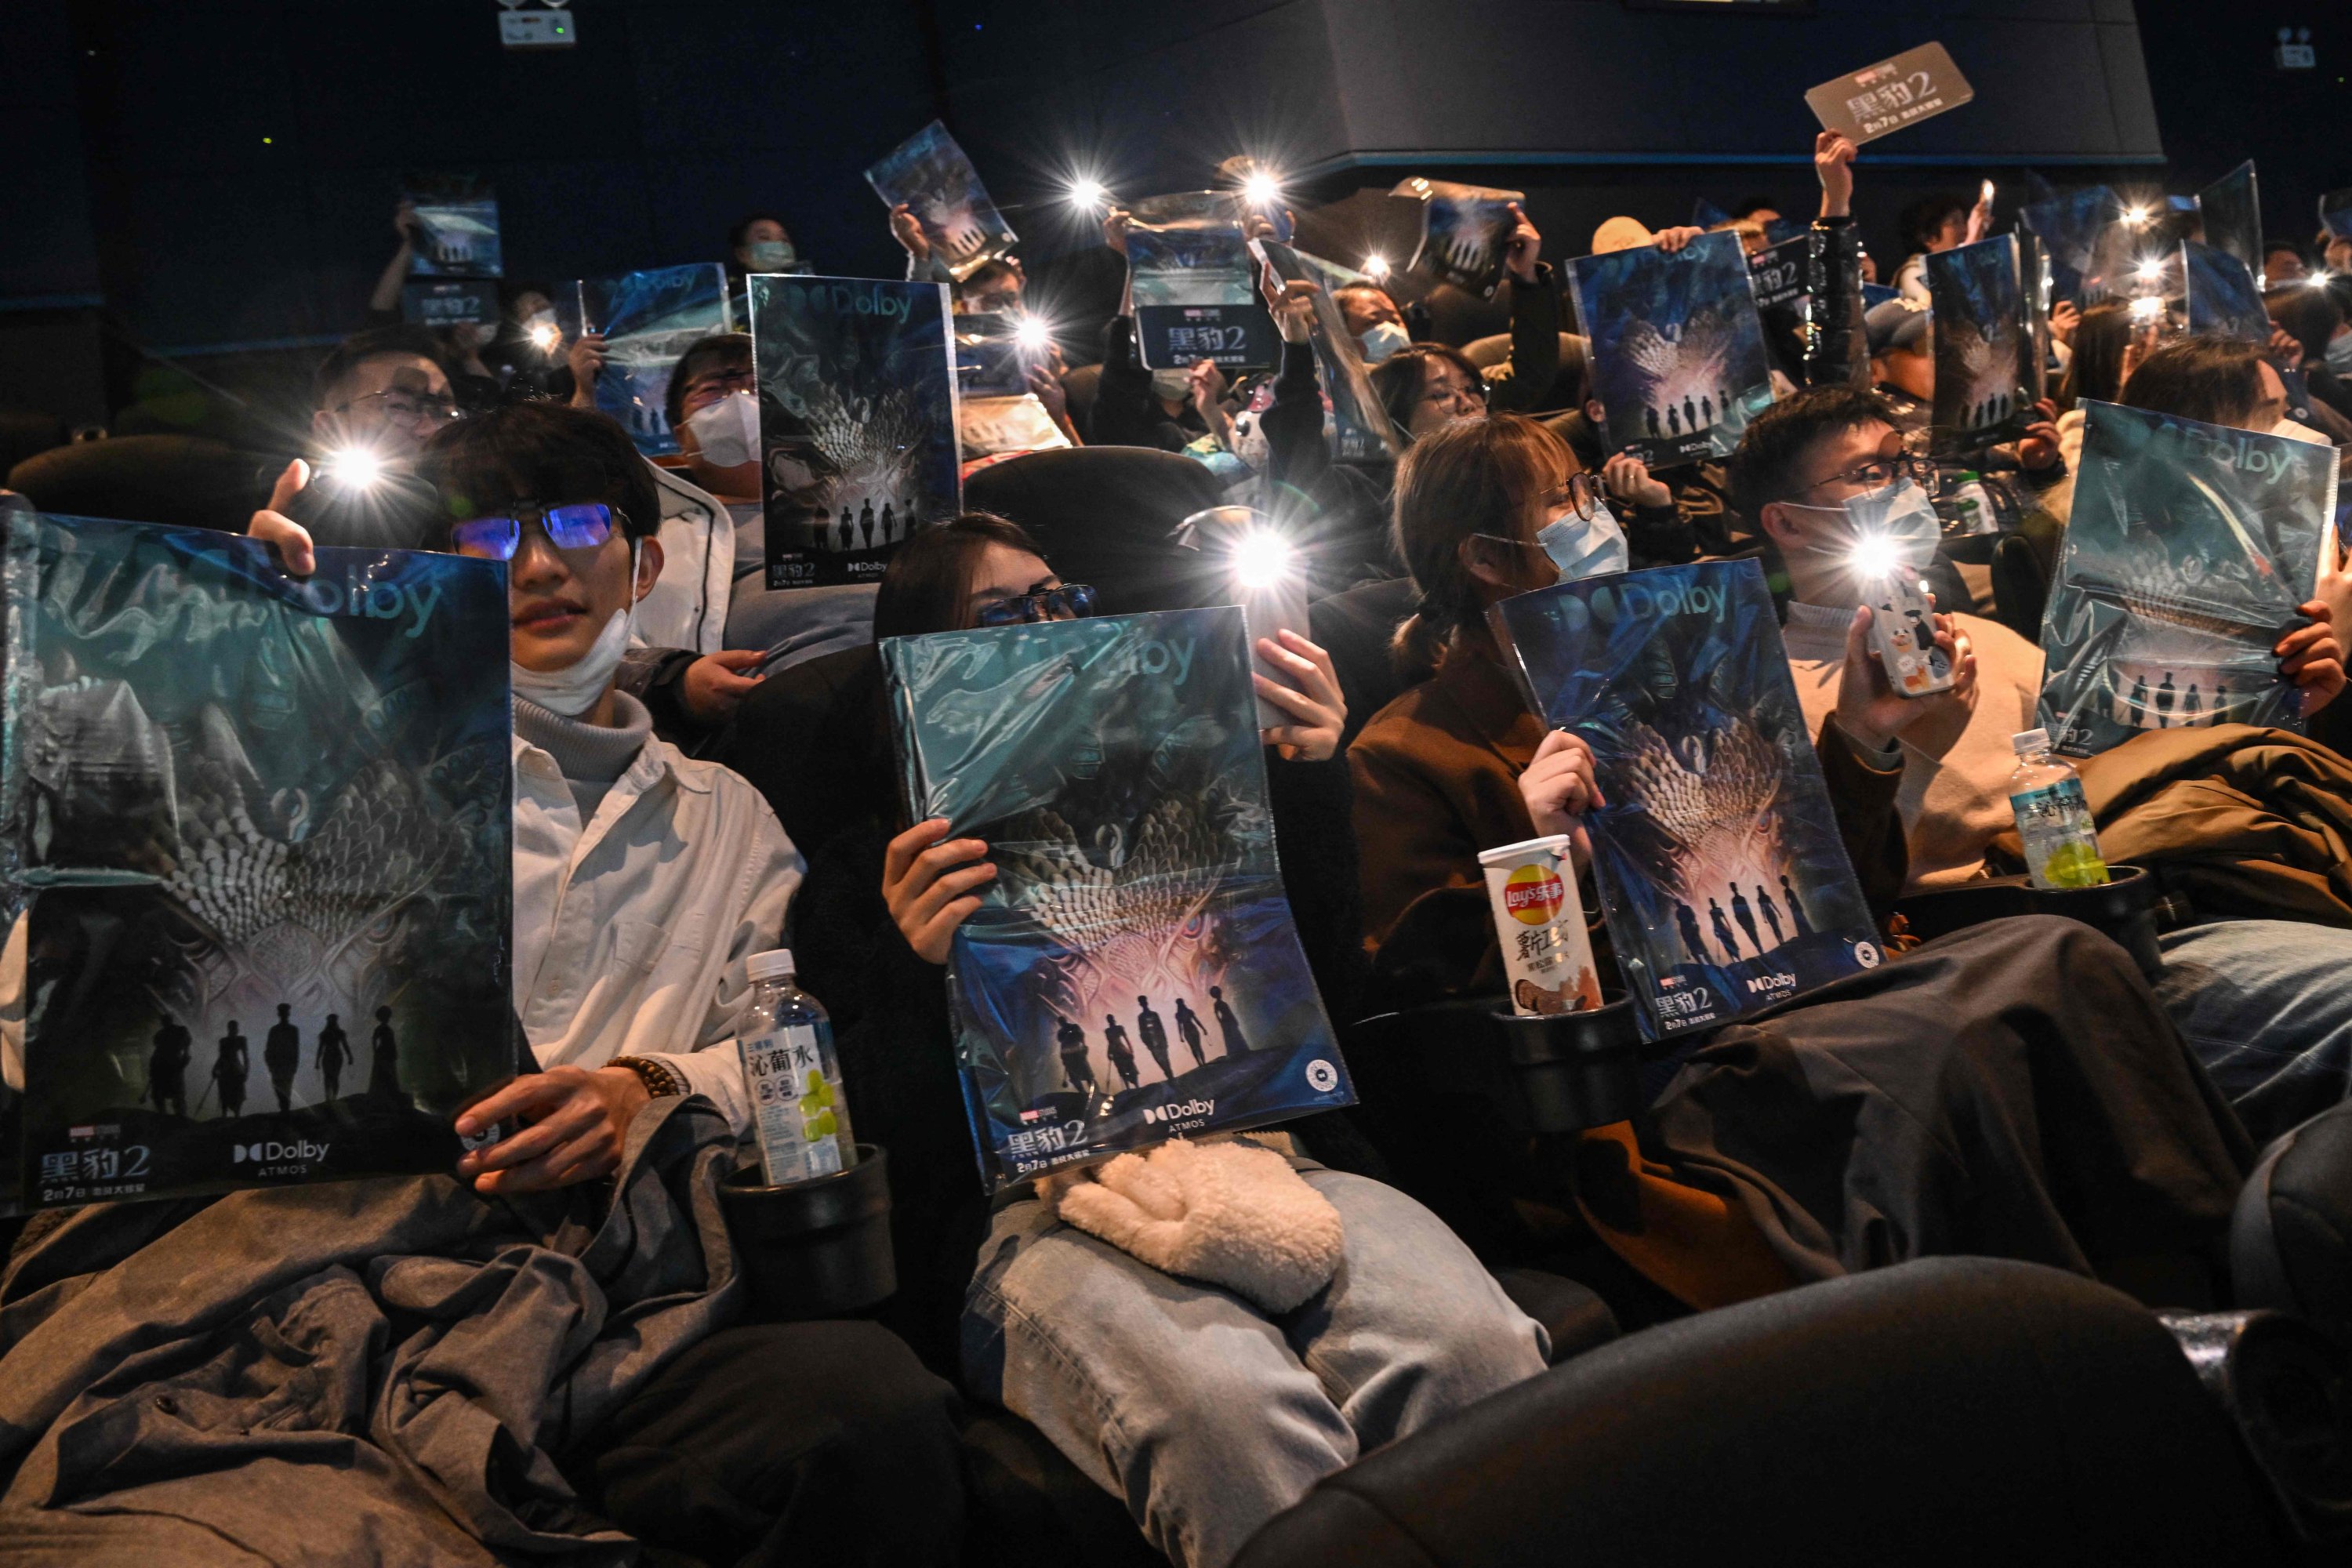 Anggota masyarakat memegang poster saat mereka menunggu untuk menonton film 